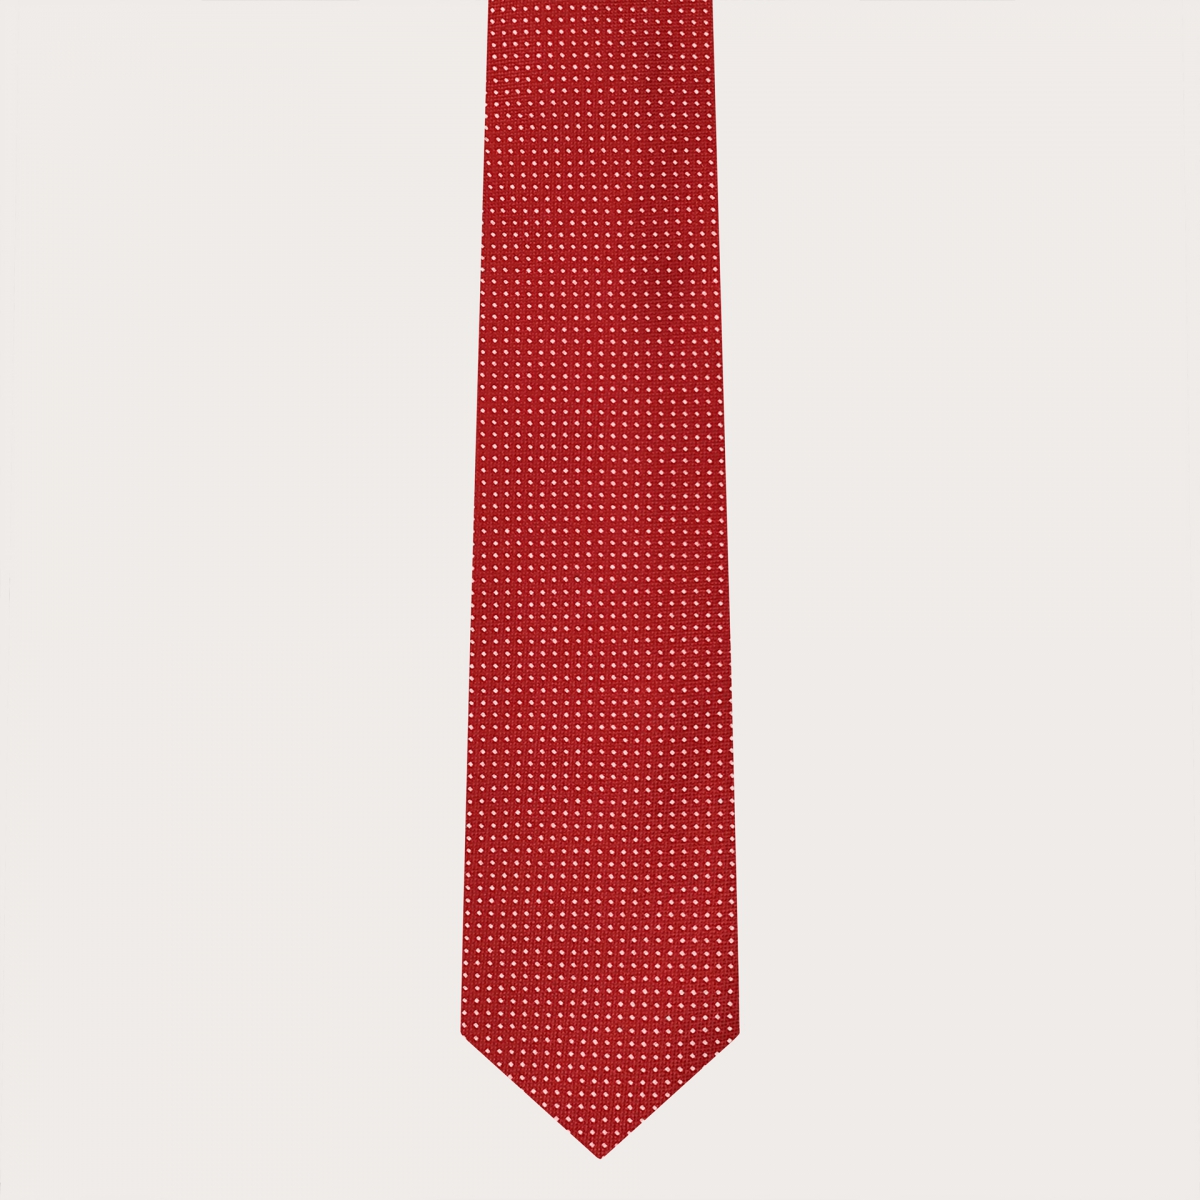 BRUCLE Tirantes y corbata coordinados en seda, estampado de puntos rojos